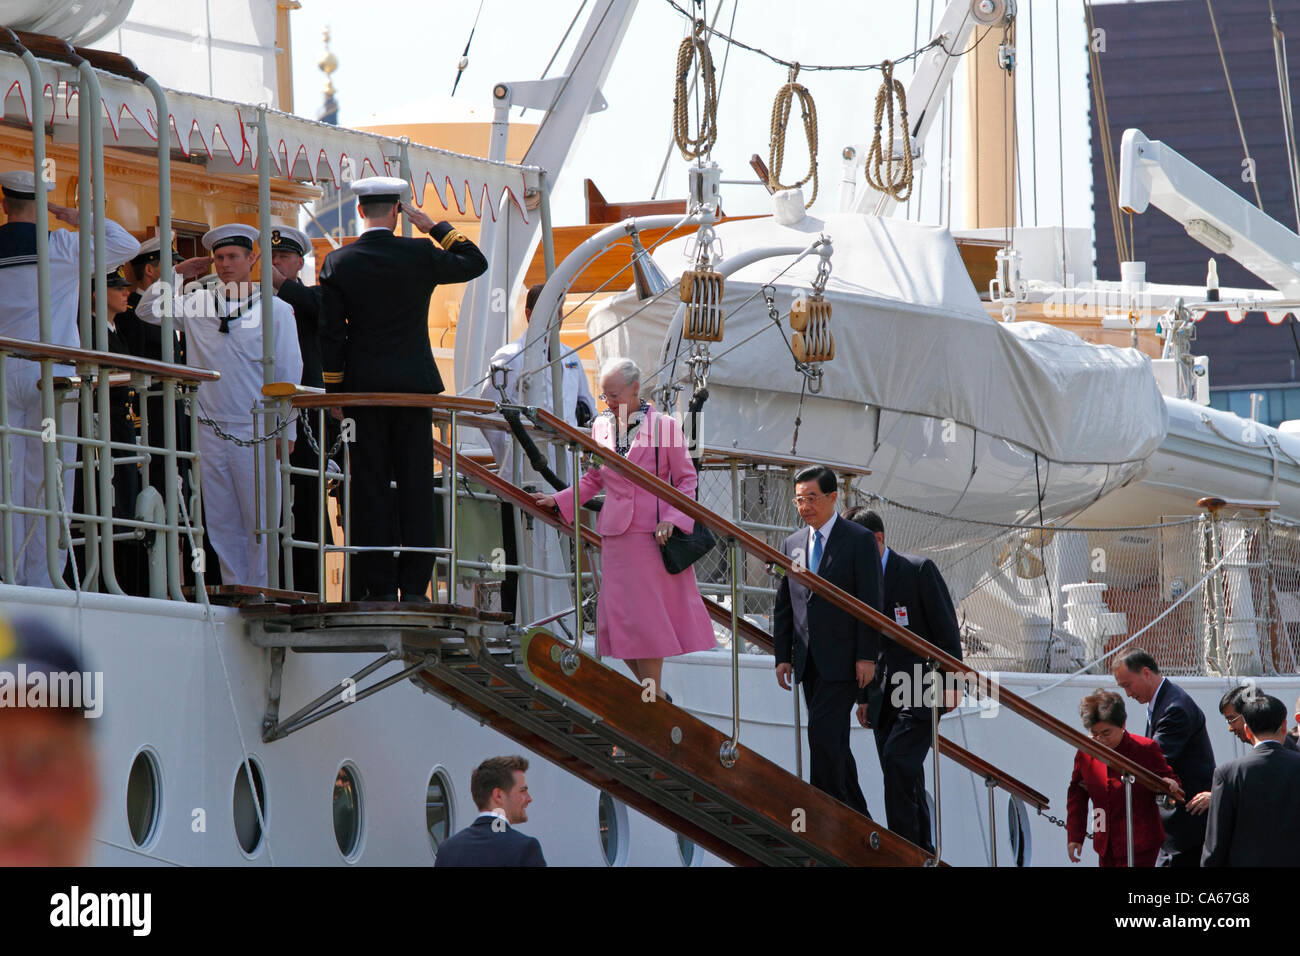 Vendredi 15 Juin, 2012 - La Reine Margrethe II de Danemark et le président chinois Hu Jintao et son épouse à bord du yacht royal du Danemark à Dannebrog HDMY Amaliehaven près du Palais d'Amalienborg dans le port de Copenhague pour une courte croisière guidée dans le port sur la visite officielle au Danemark. Banque D'Images